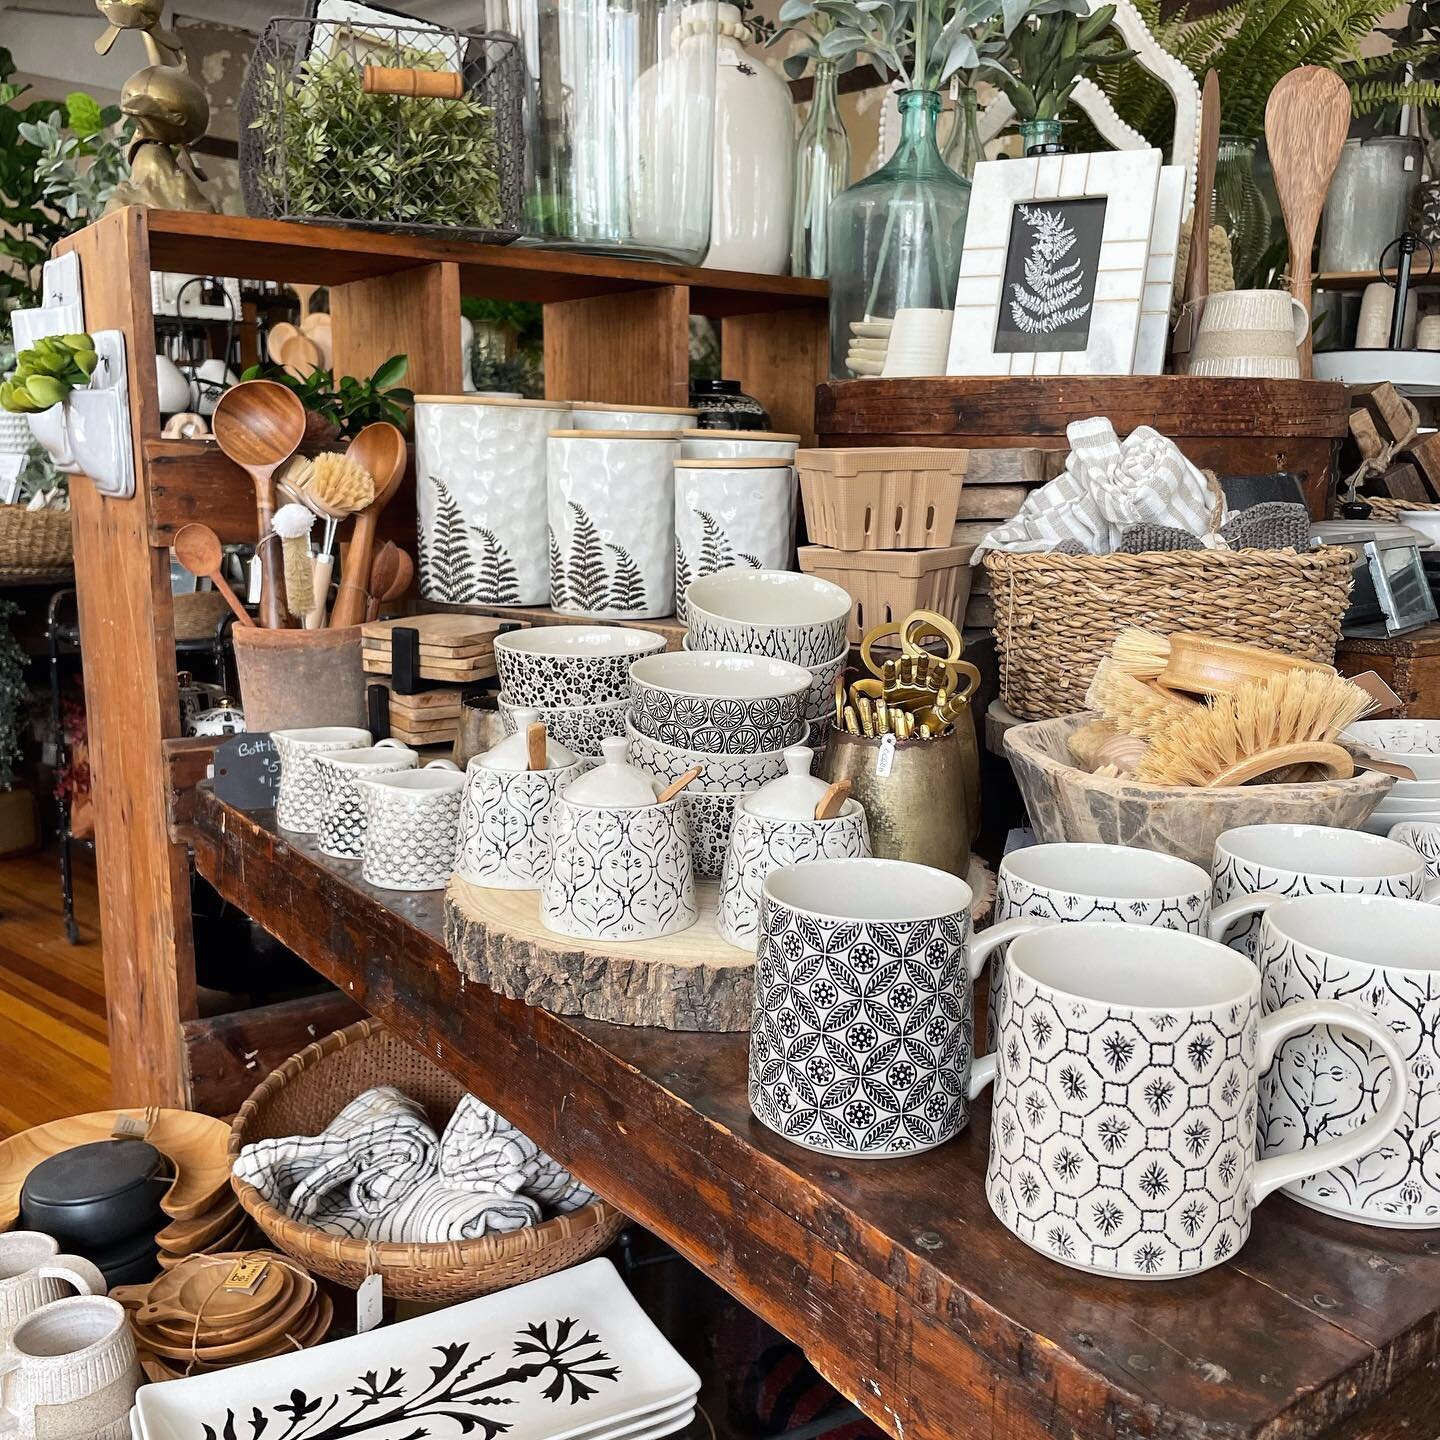 Good morning friends✨ Shop&rsquo;s open 11-5!!! #bluebirdhomedecor #shopsmall #giftshop #blackandwhite #kitchenware #schenectadyny #homedecor